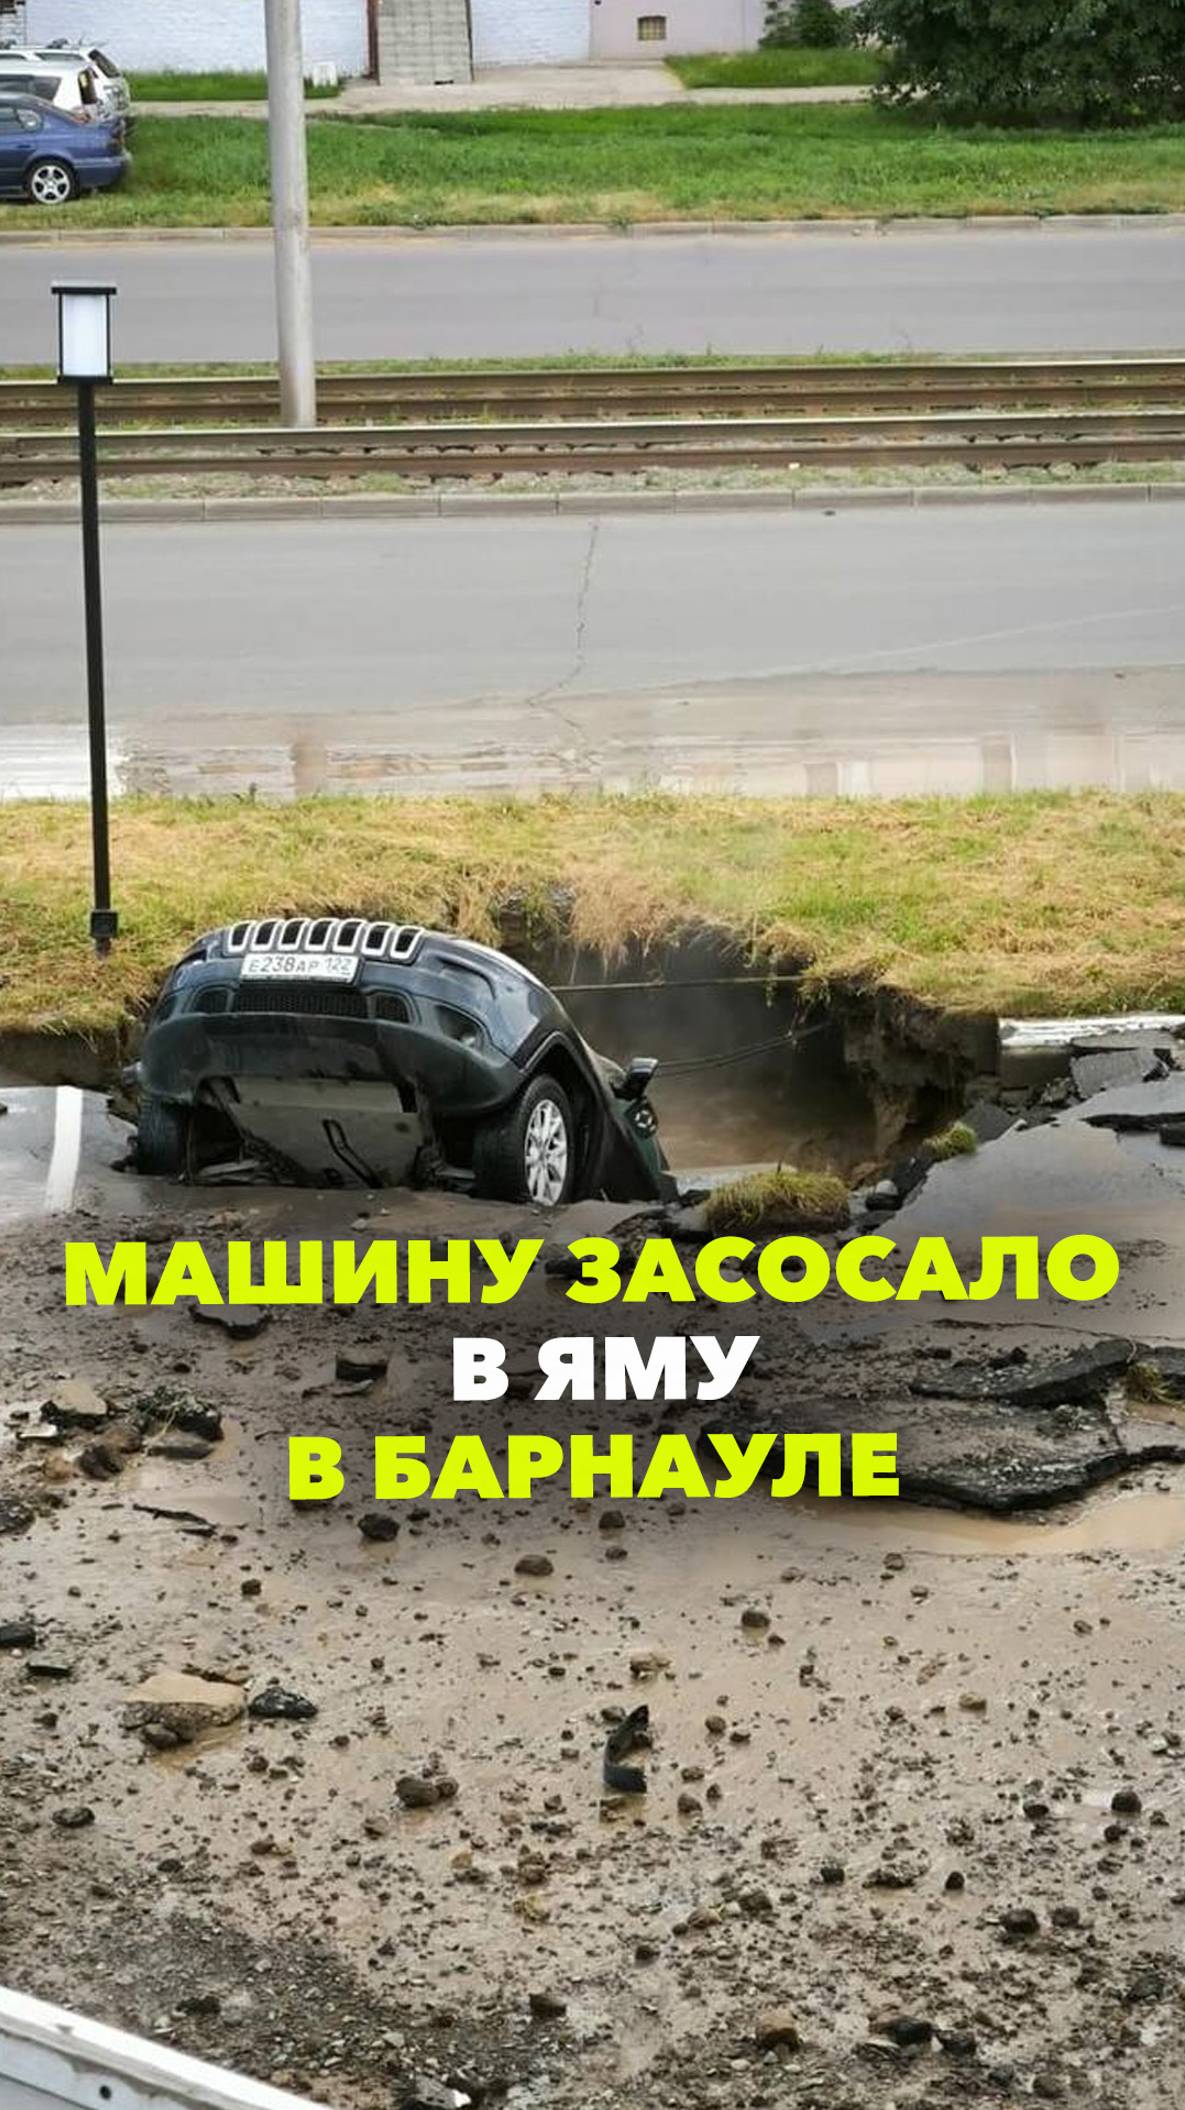 Машину подбросило вверх и утащило под землю: такой прорыв воды в Барнауле